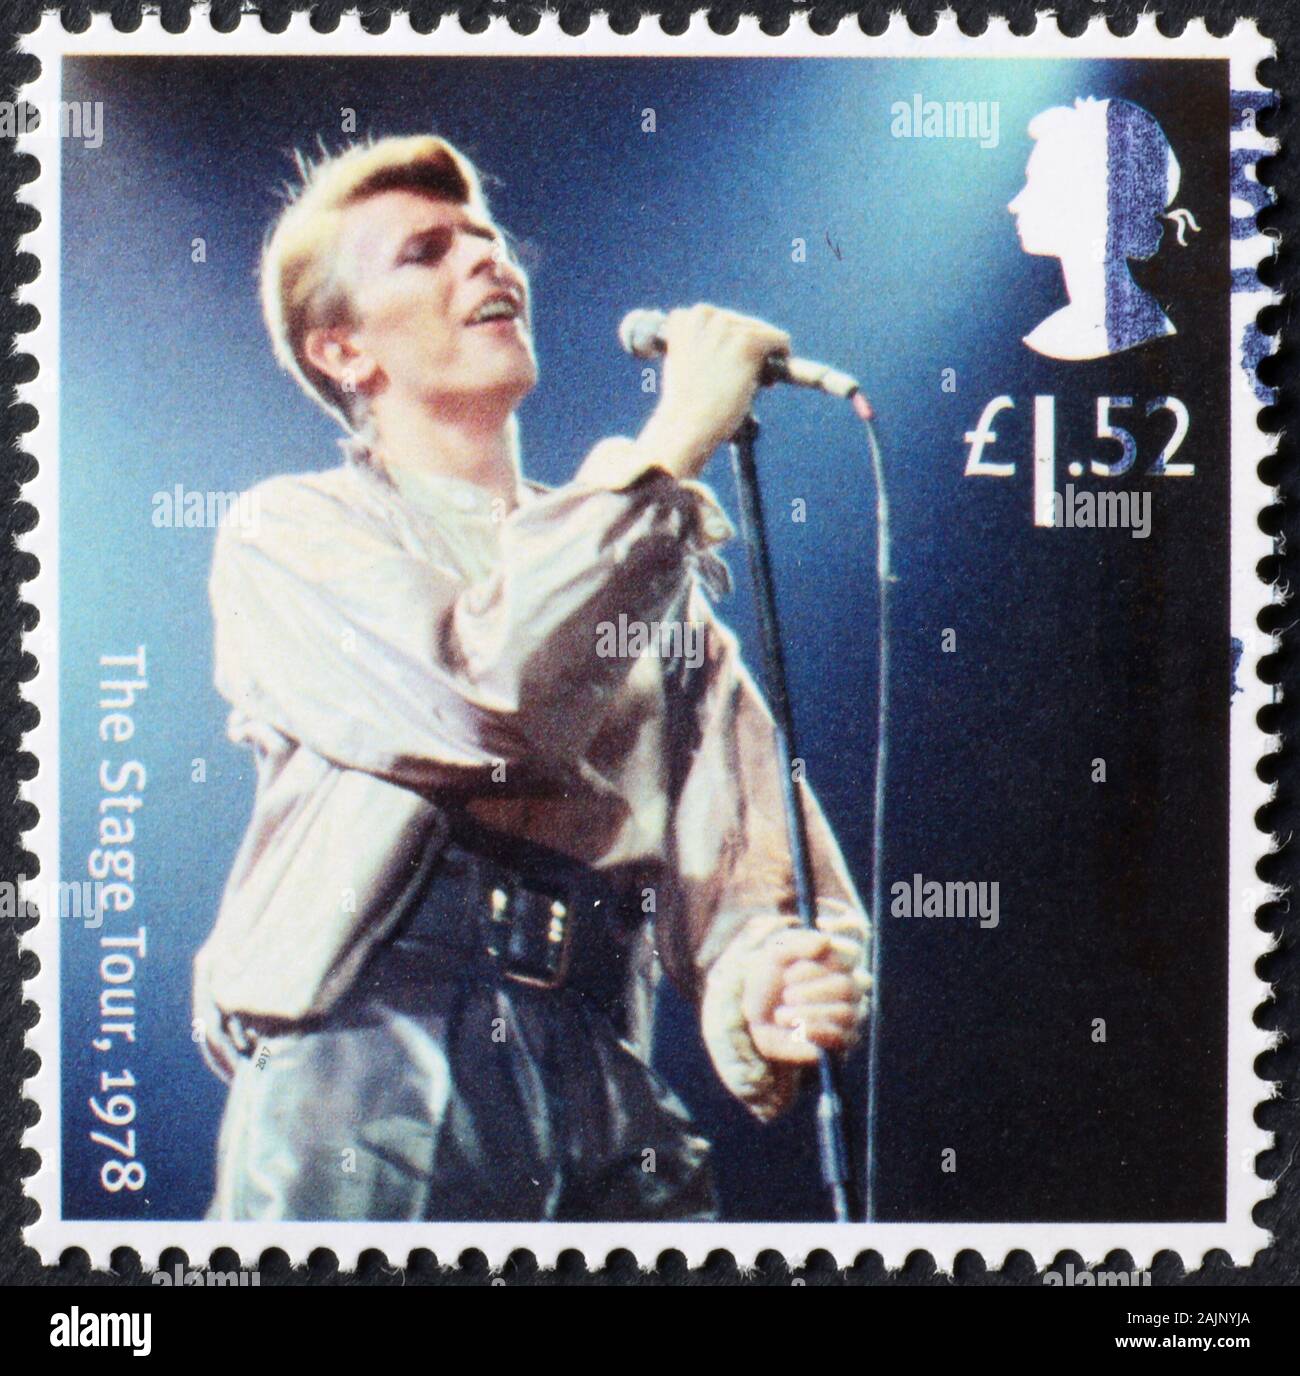 David Bowie im Konzert auf britischer Briefmarke Stockfoto